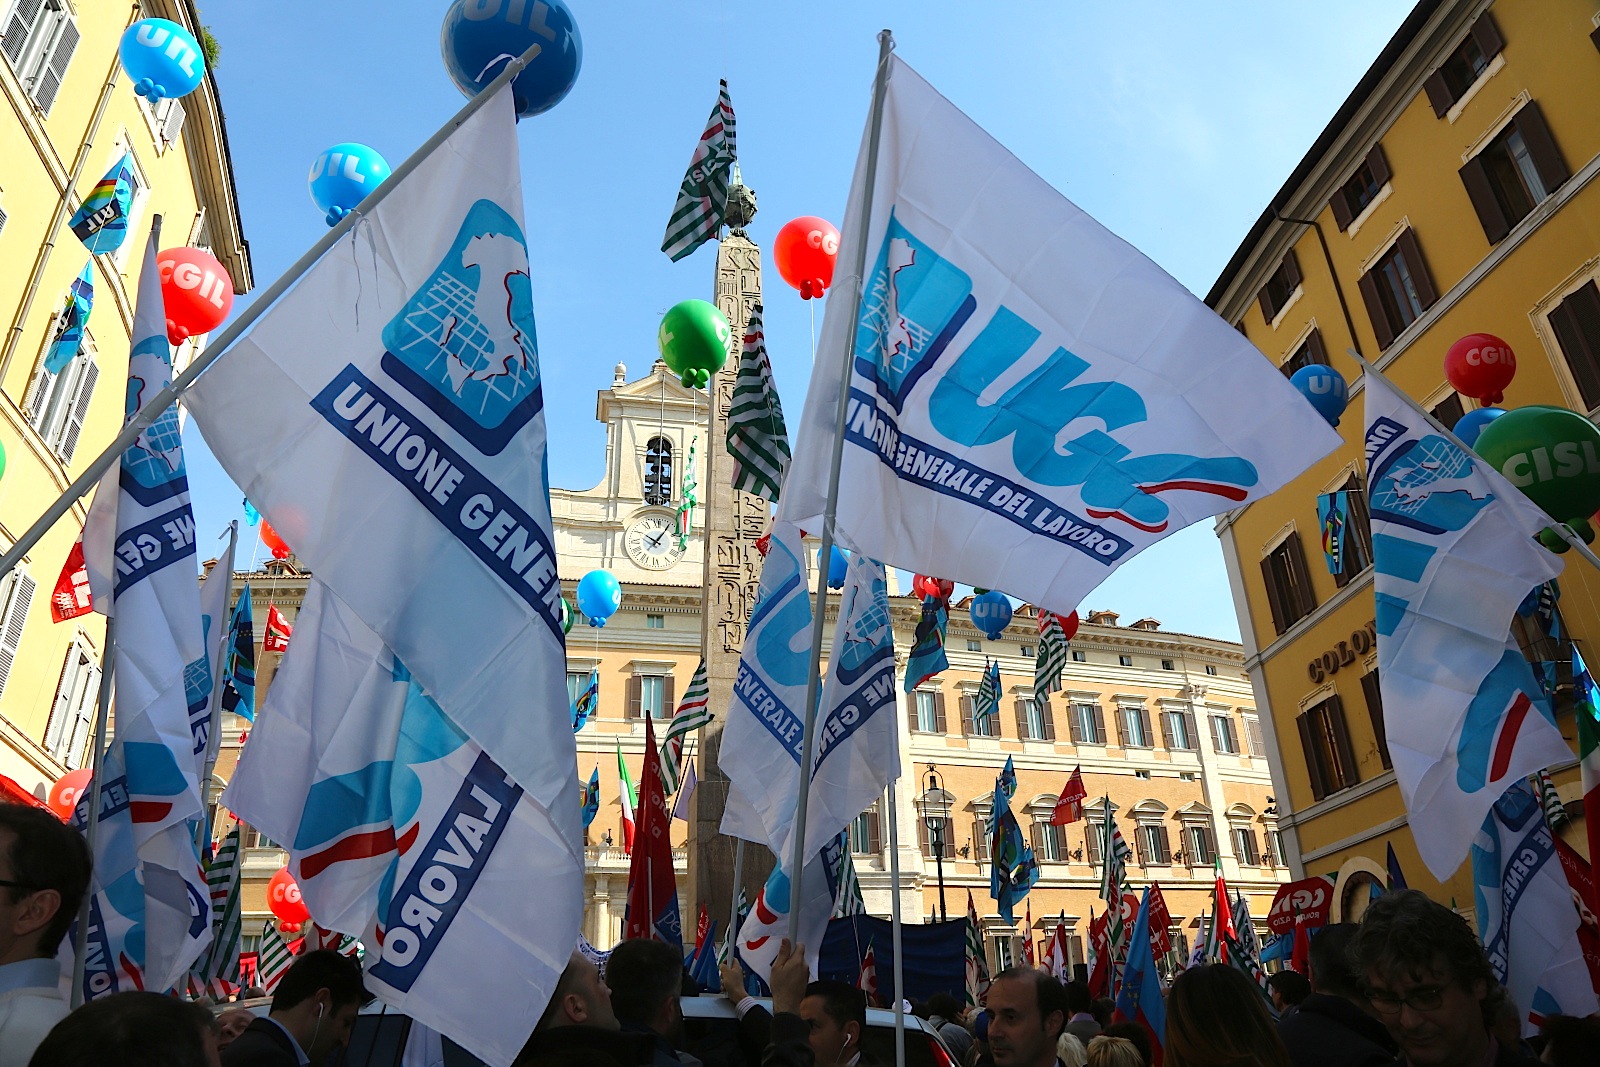 Domani Capone a Cagliari per confronto con sindacalisti e lavoratori